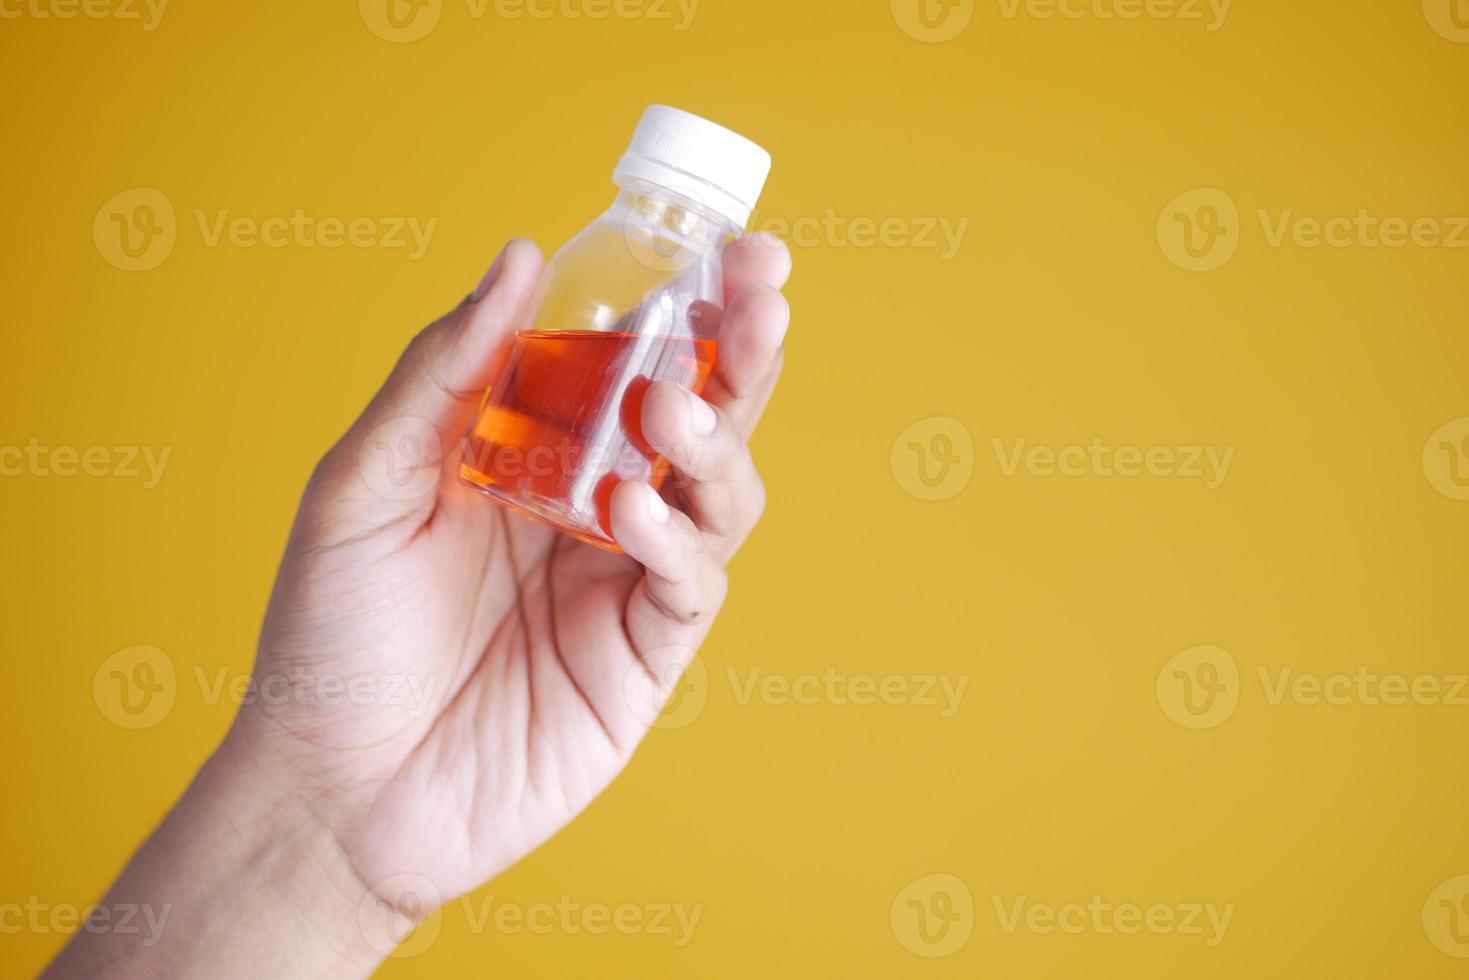 segurando a garrafa com remédio líquido em amarelo foto